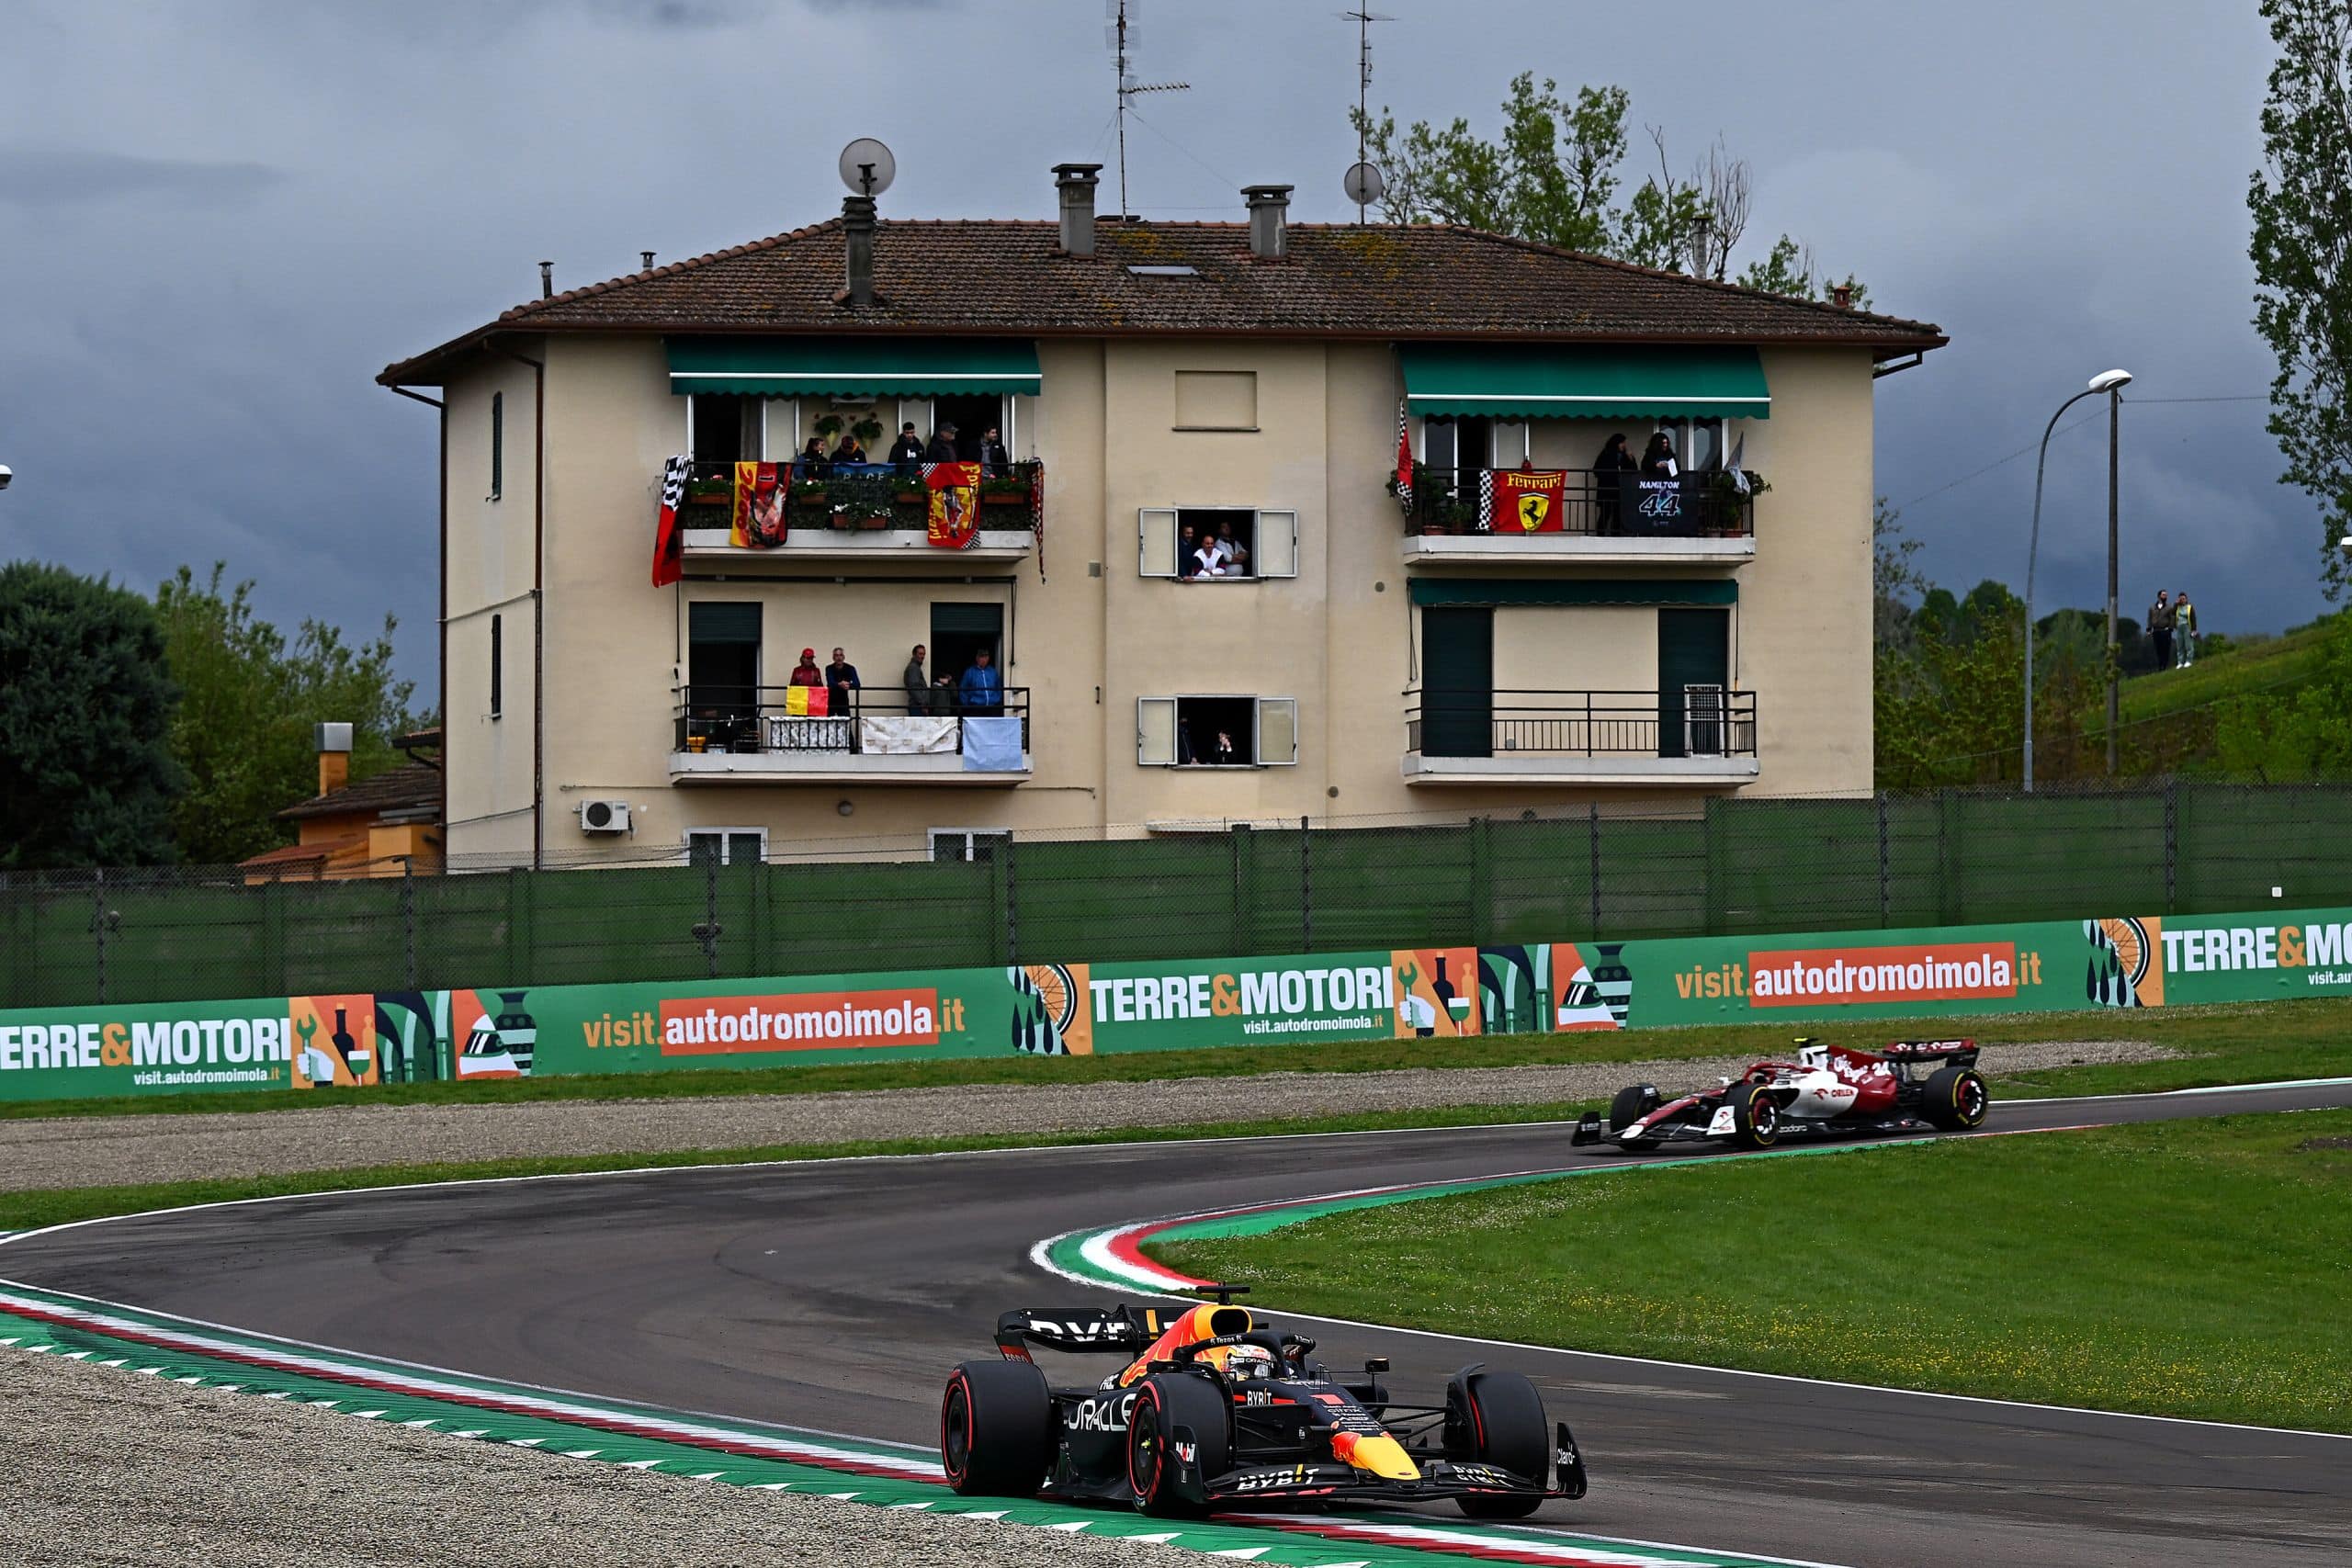 F1 Grand Prix Of Emilia Romagna